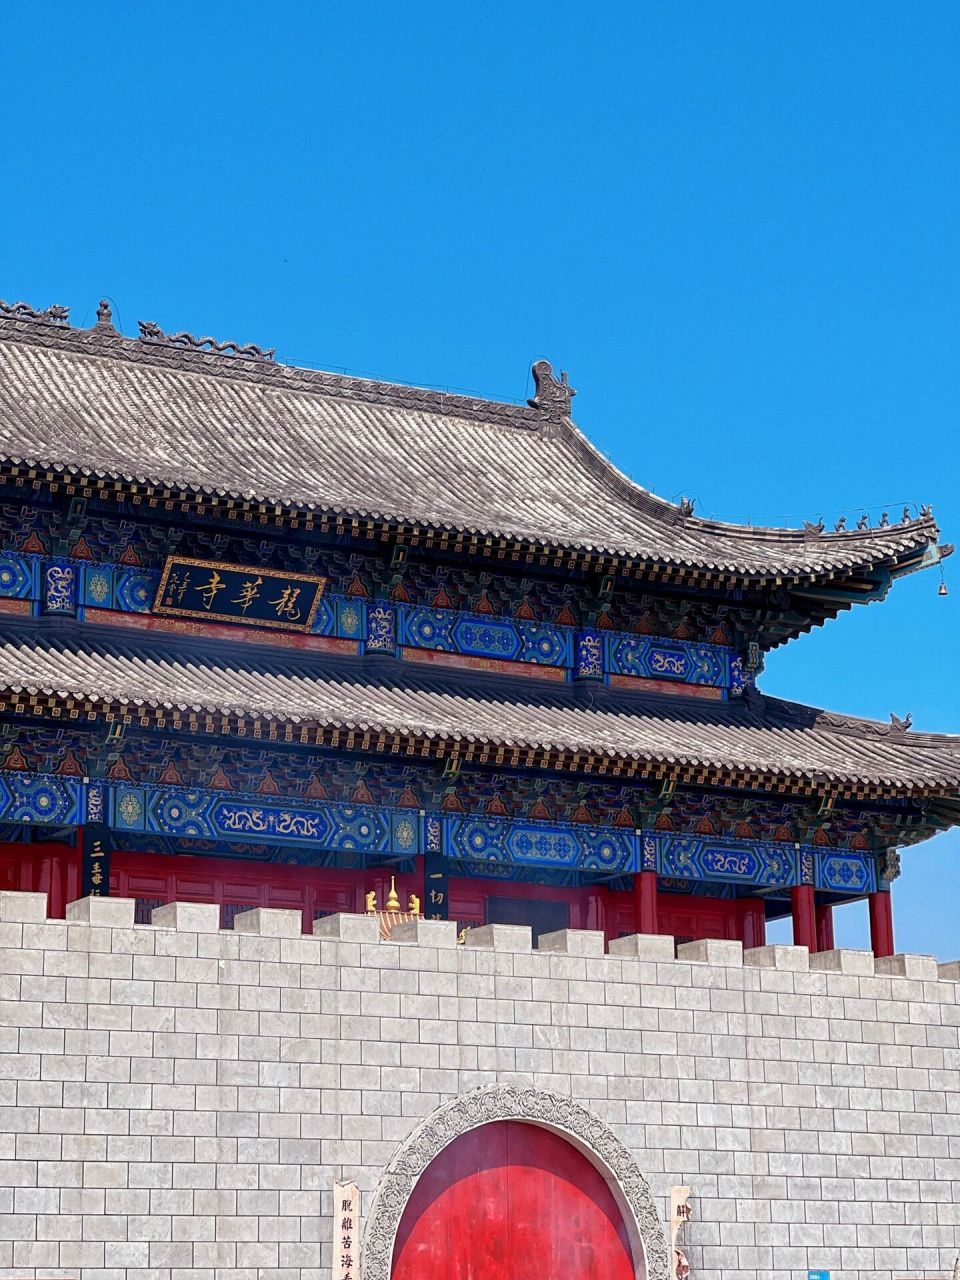 松原· 亚洲最大的寺庙殿宇   【龙华寺】 亚洲最大的寺庙殿宇,松花江